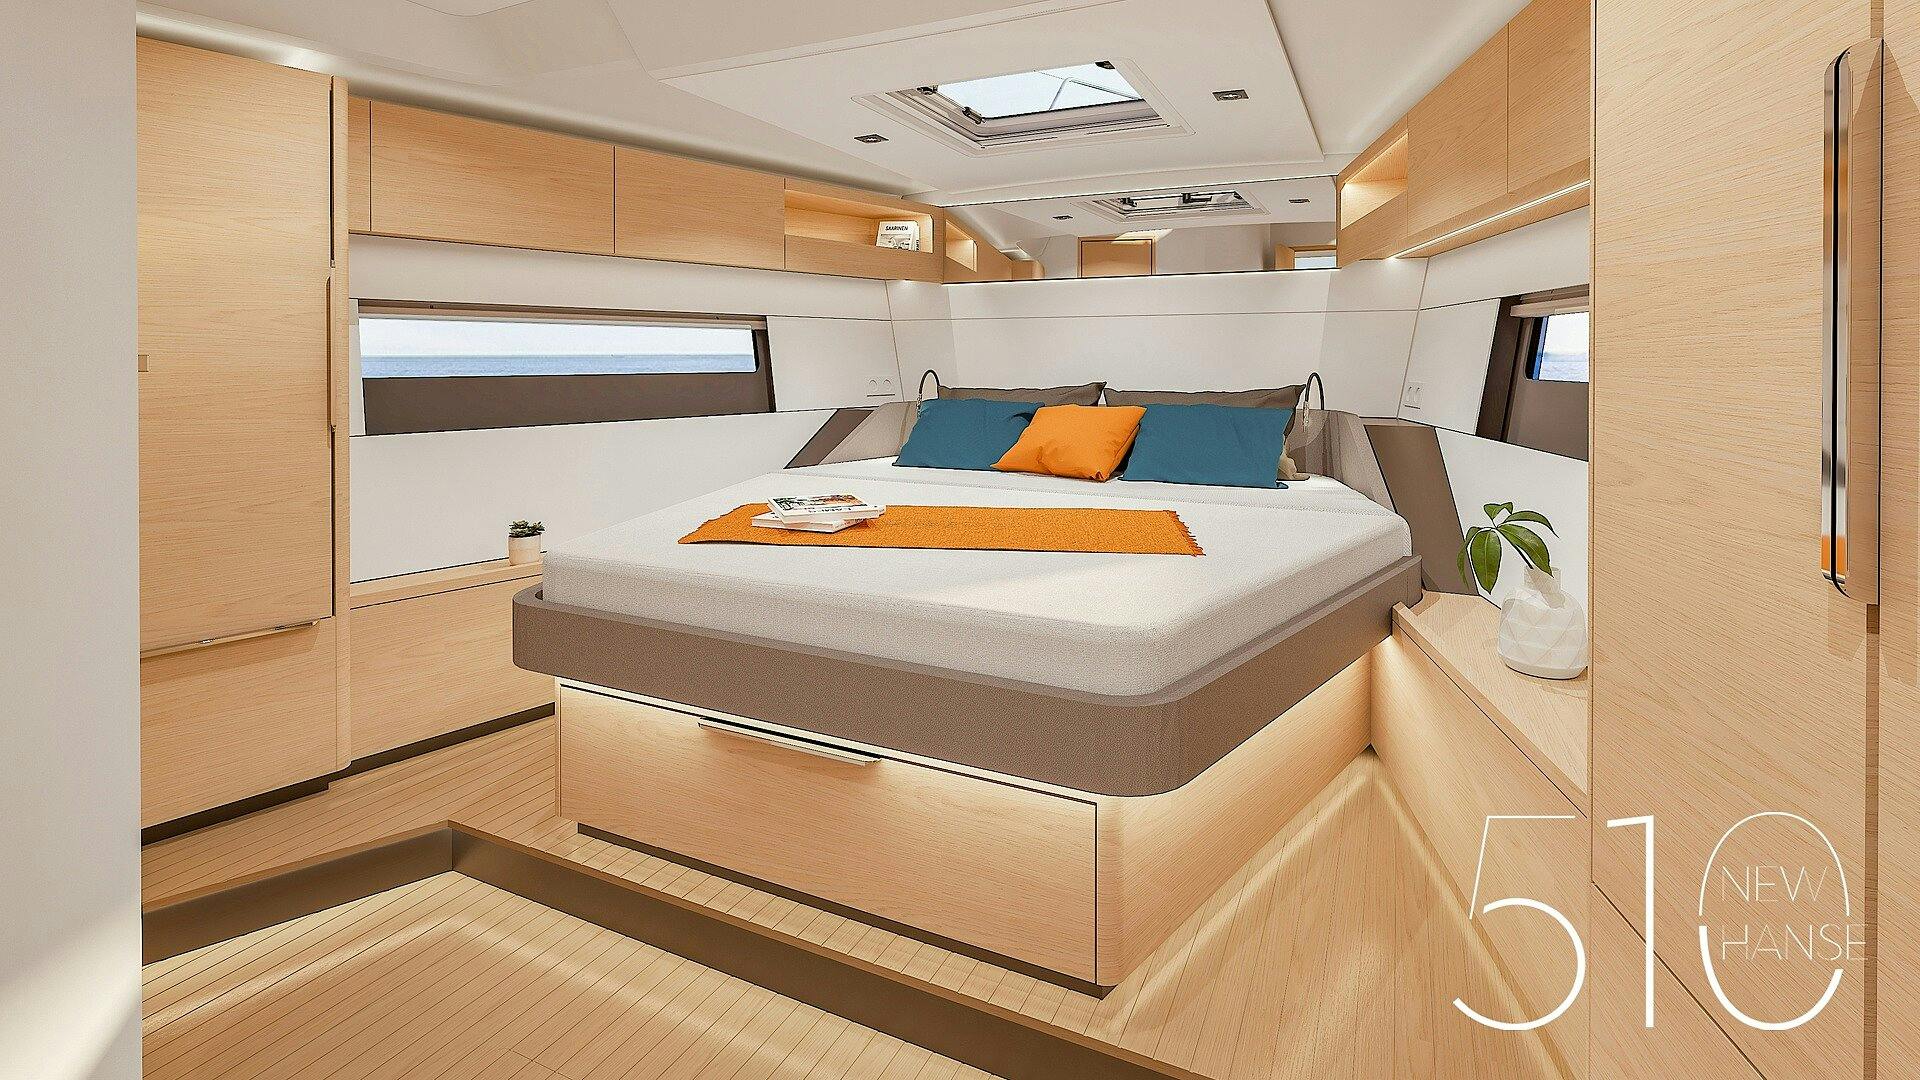 El sofisticado diseño del Hanse 510 crea una sensación de lujo y amplio espacio bajo cubierta